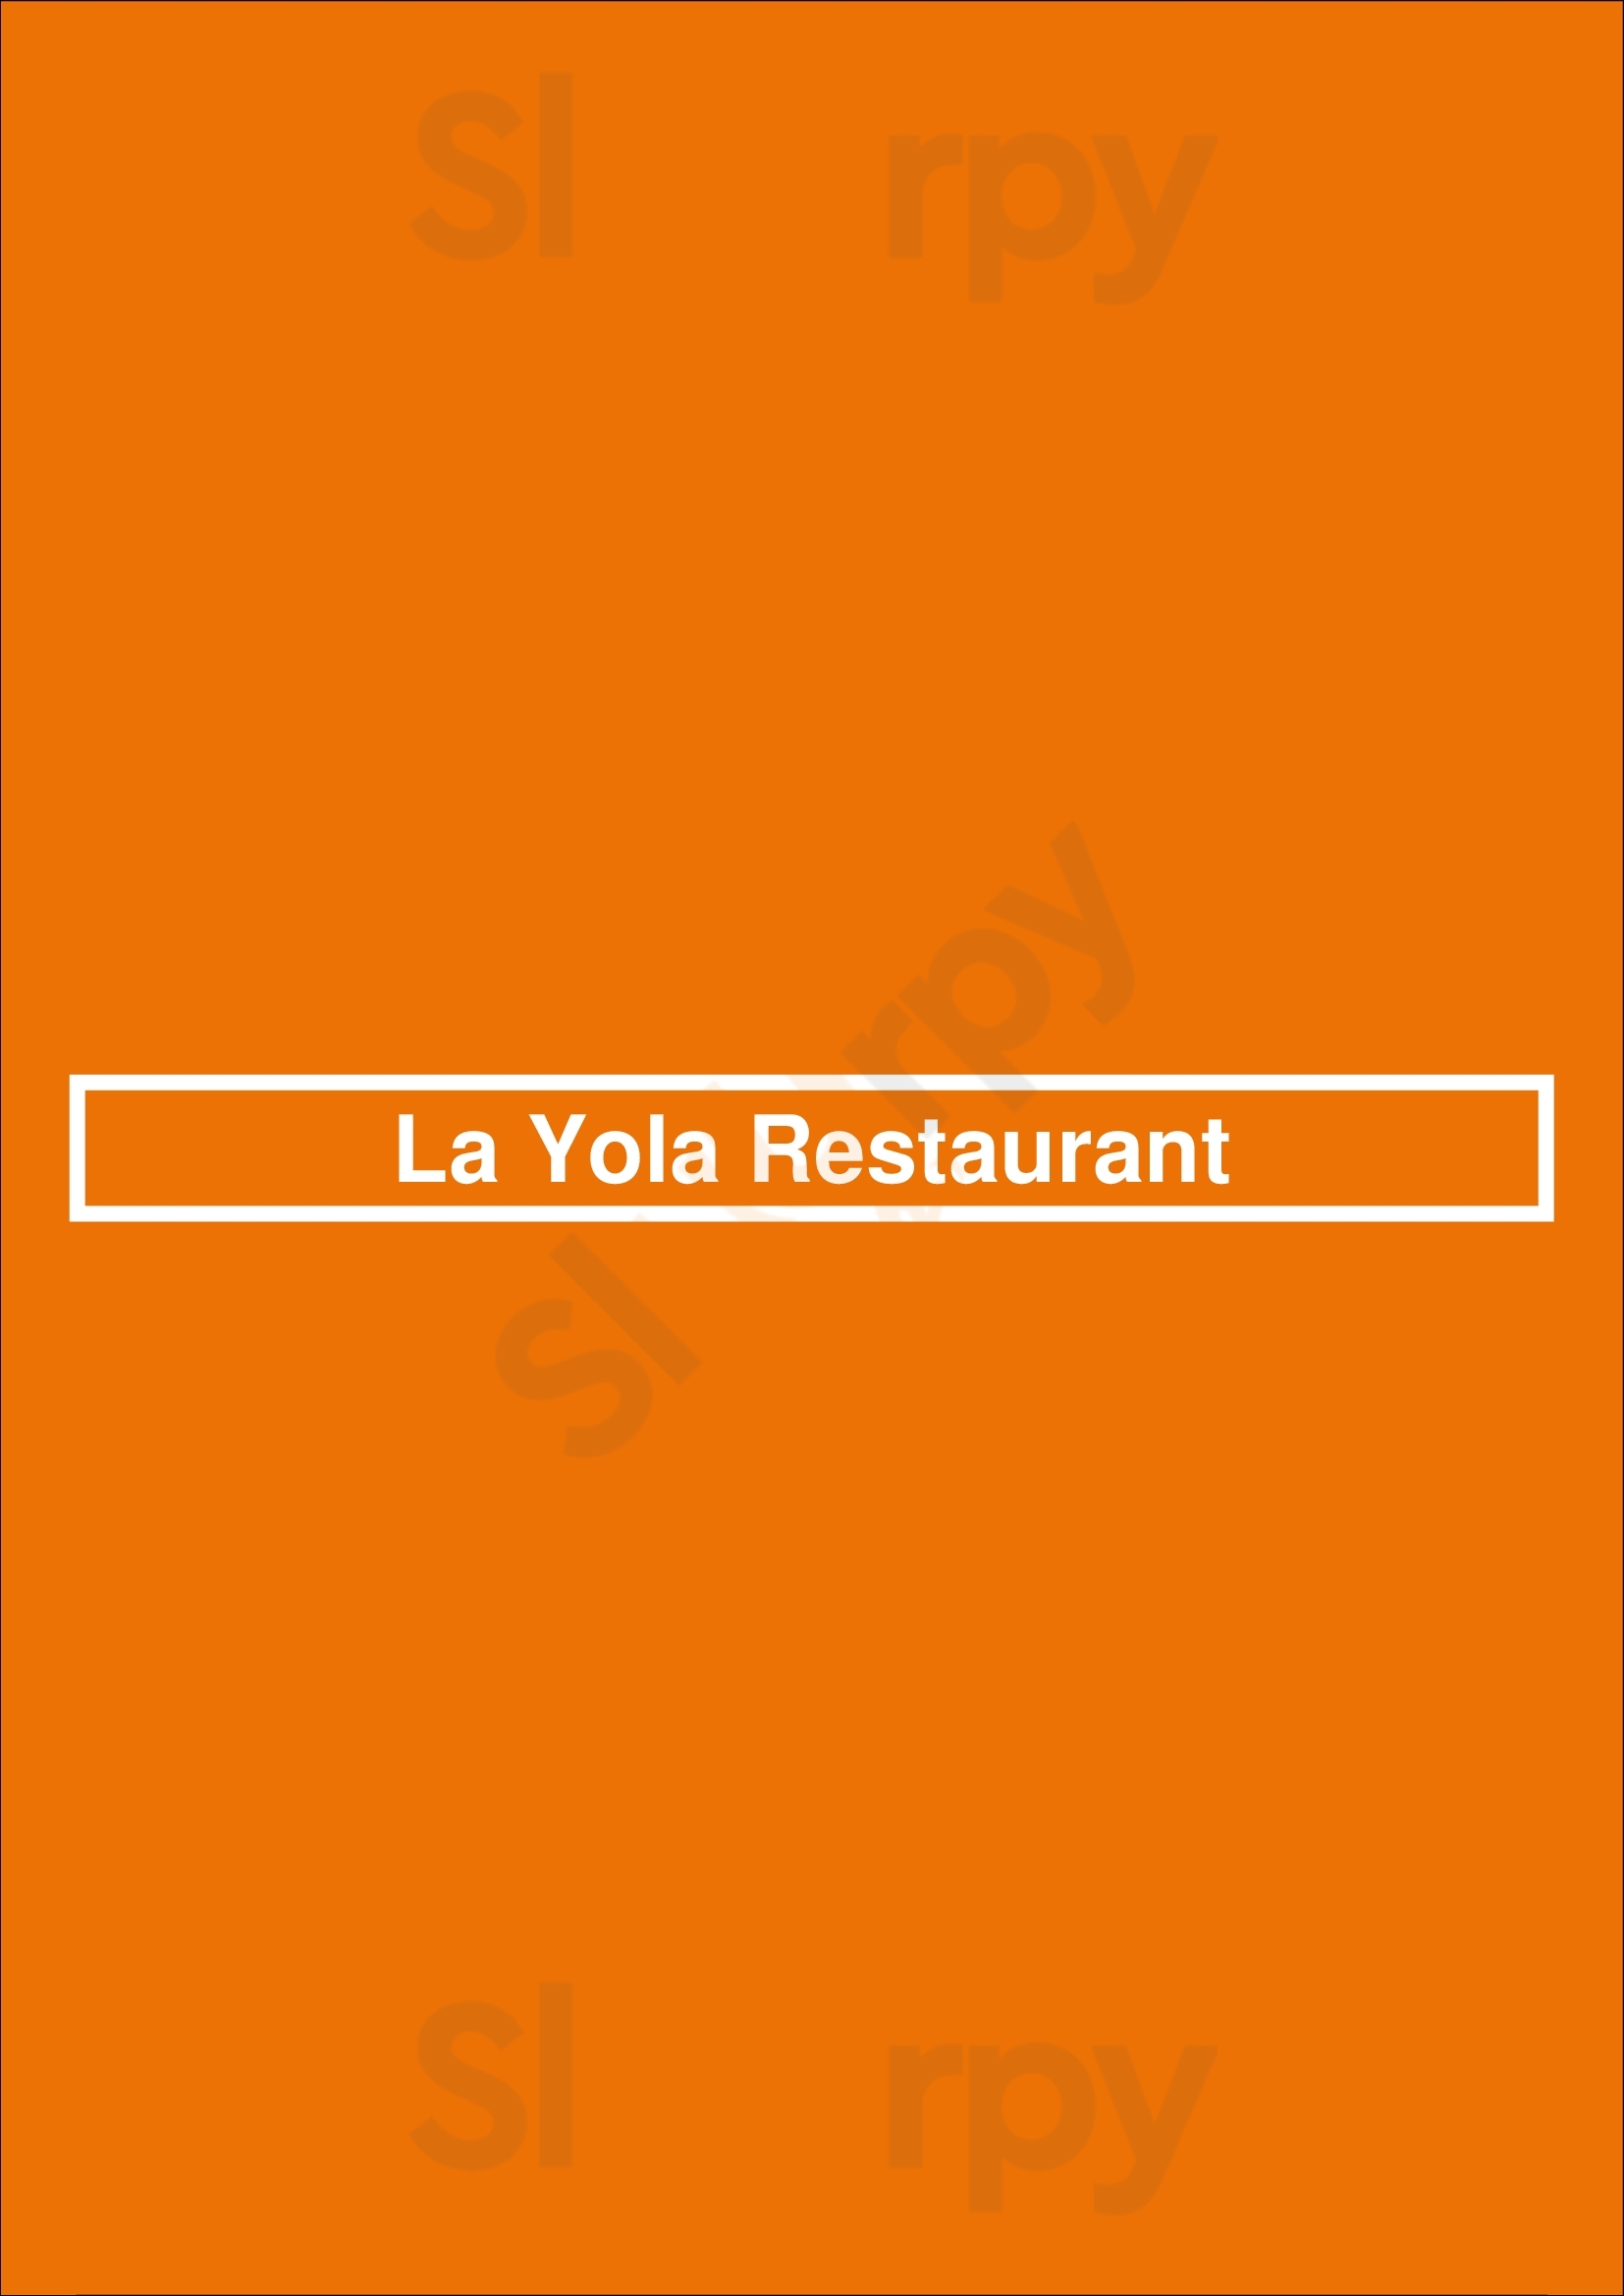 Restaurante La Yola Punta Cana Menu - 1